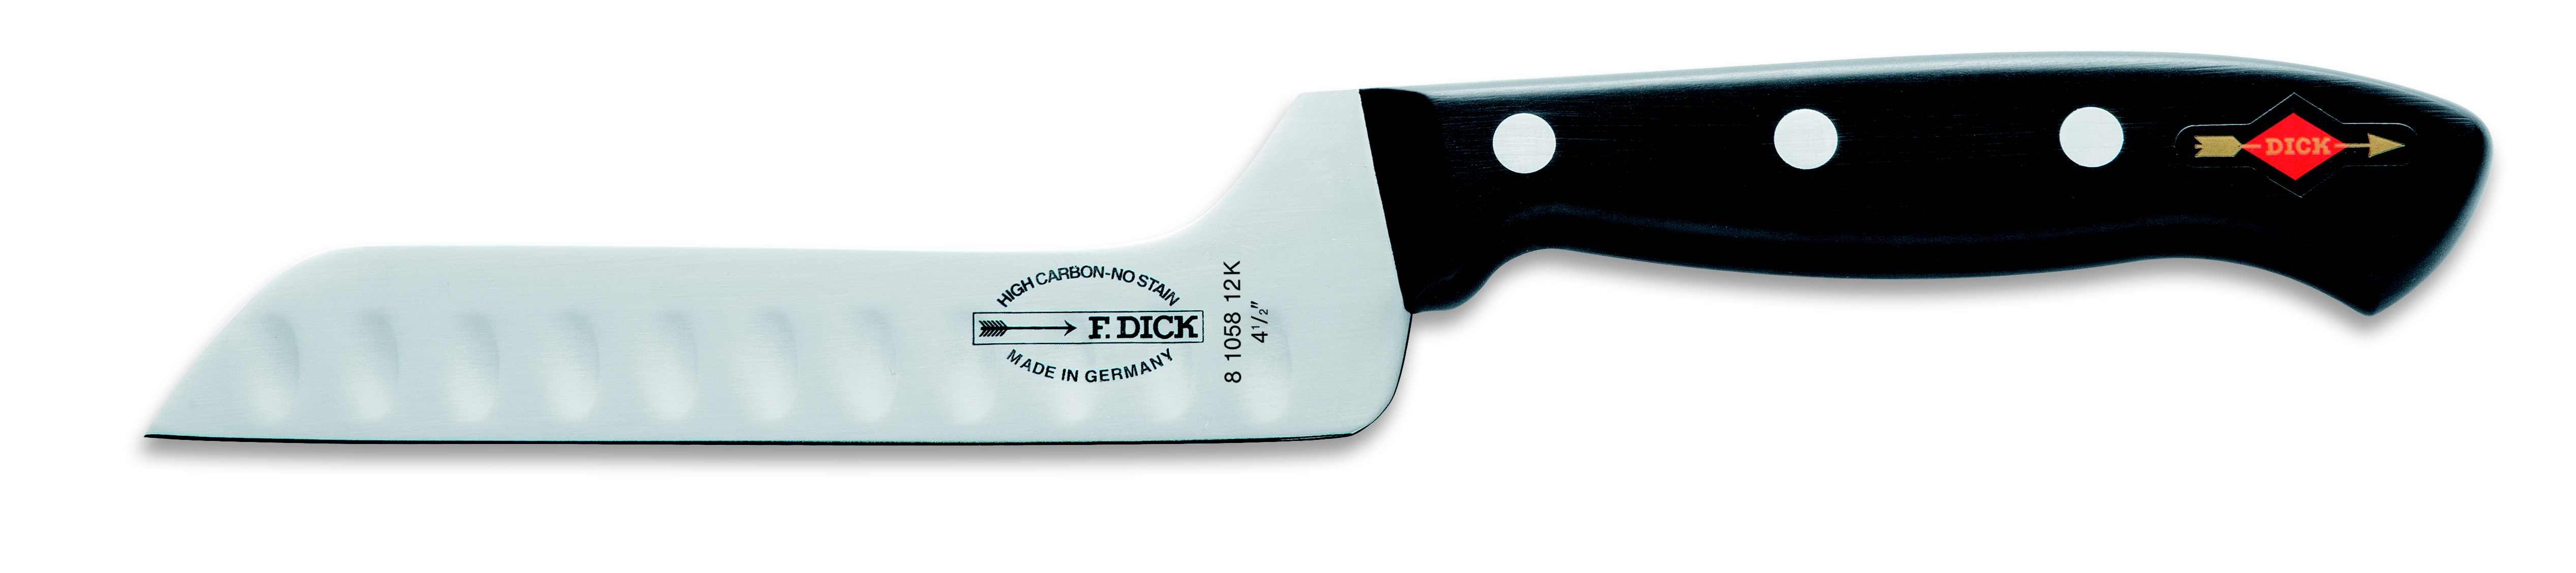 Nůž na sýr se speciálním výbrusem v délce 12 cm